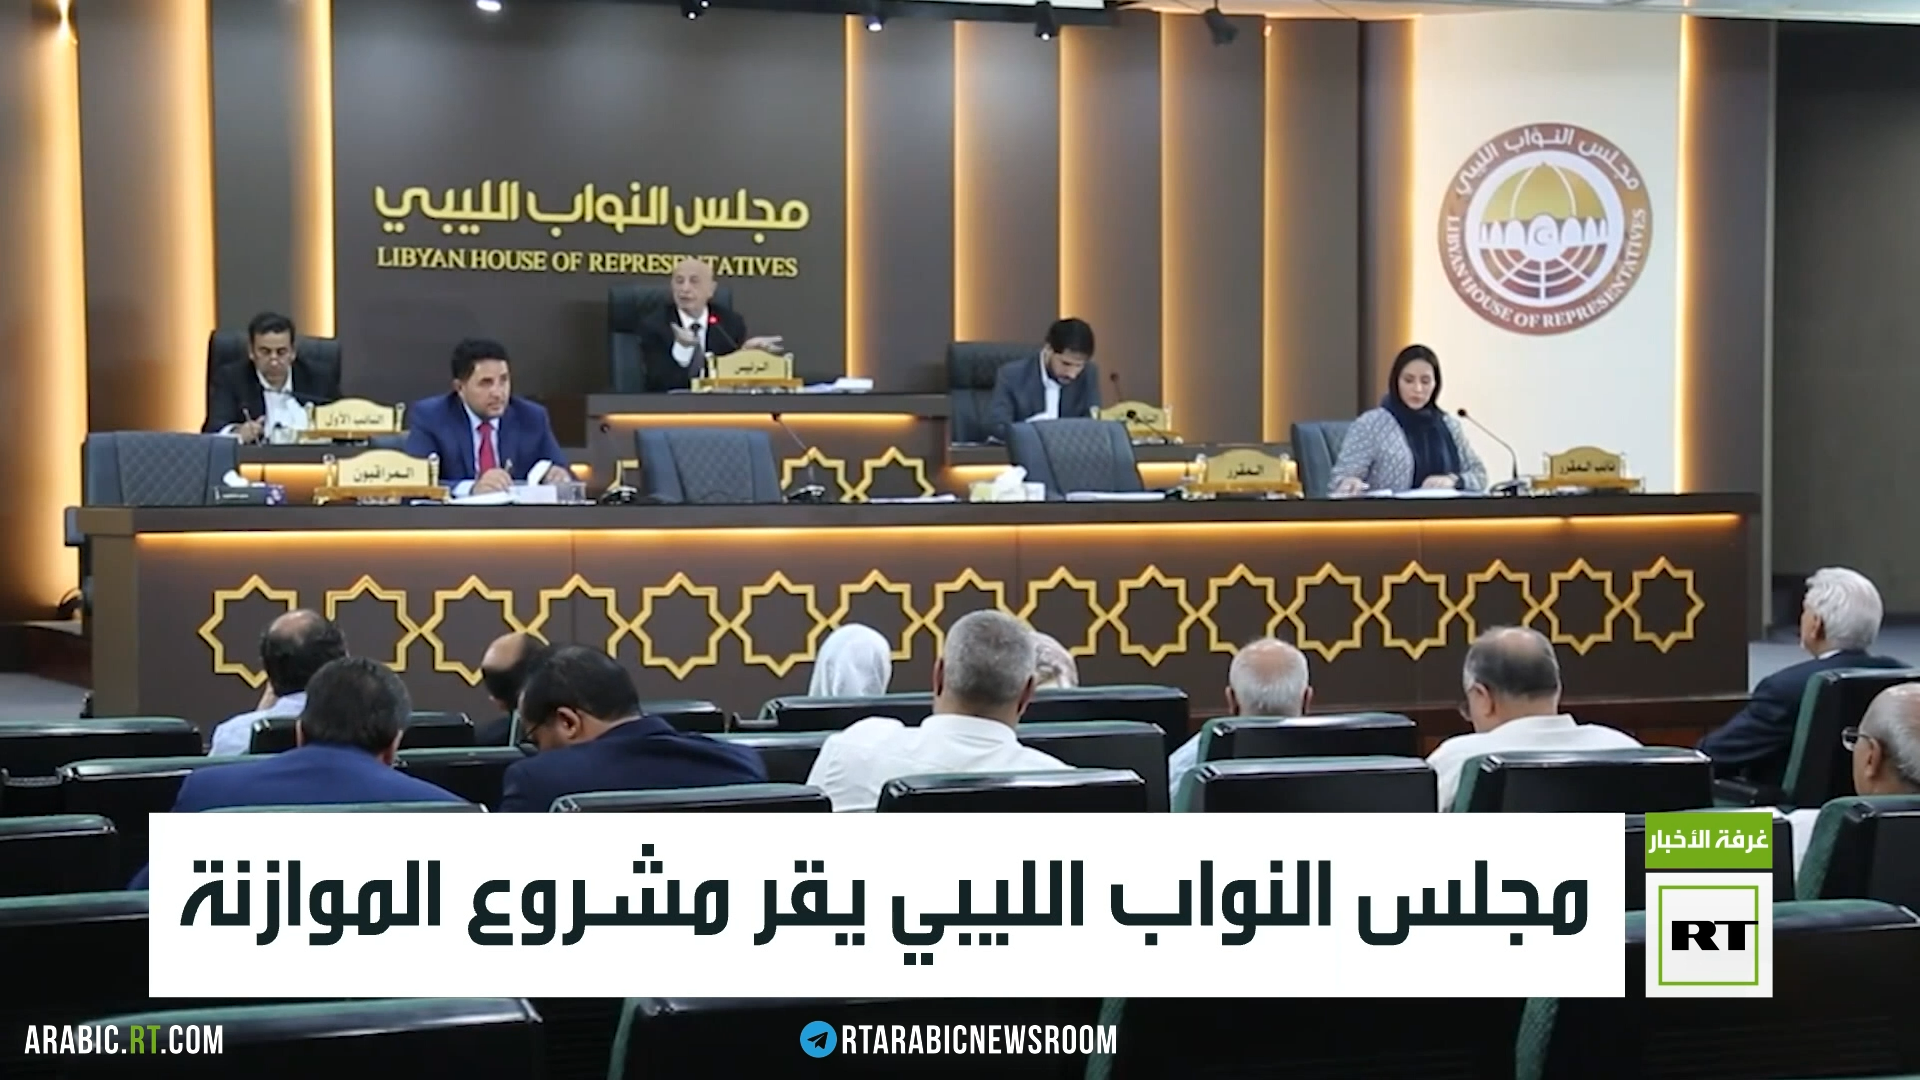 الجامعة العربية تدعو إلى الإسراع بإنجاز مشاريع القوانين الانتخابية في ليبيا